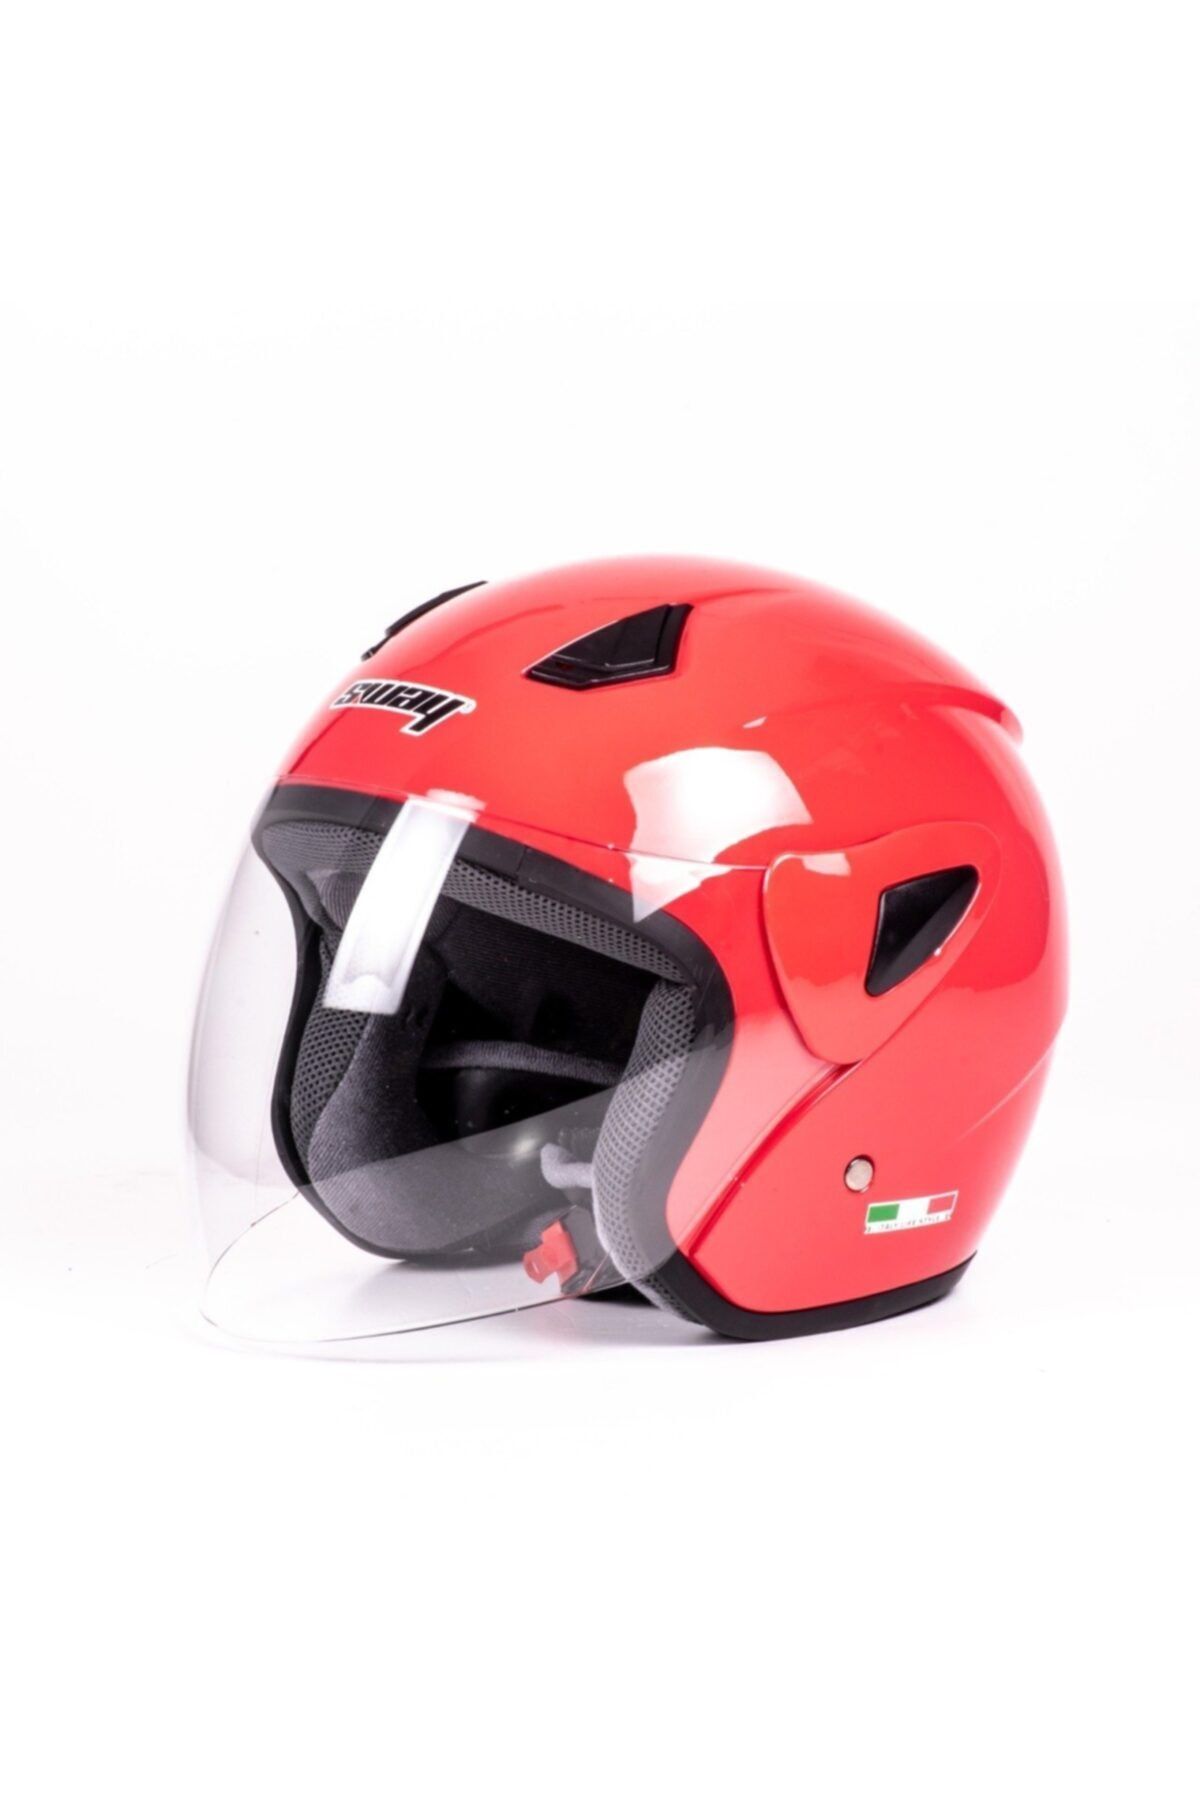 MT Helmets Helmets Sway 700 Yarı Camlı Kask Kırmızı Ce Güvenlik Sertifikalı-s